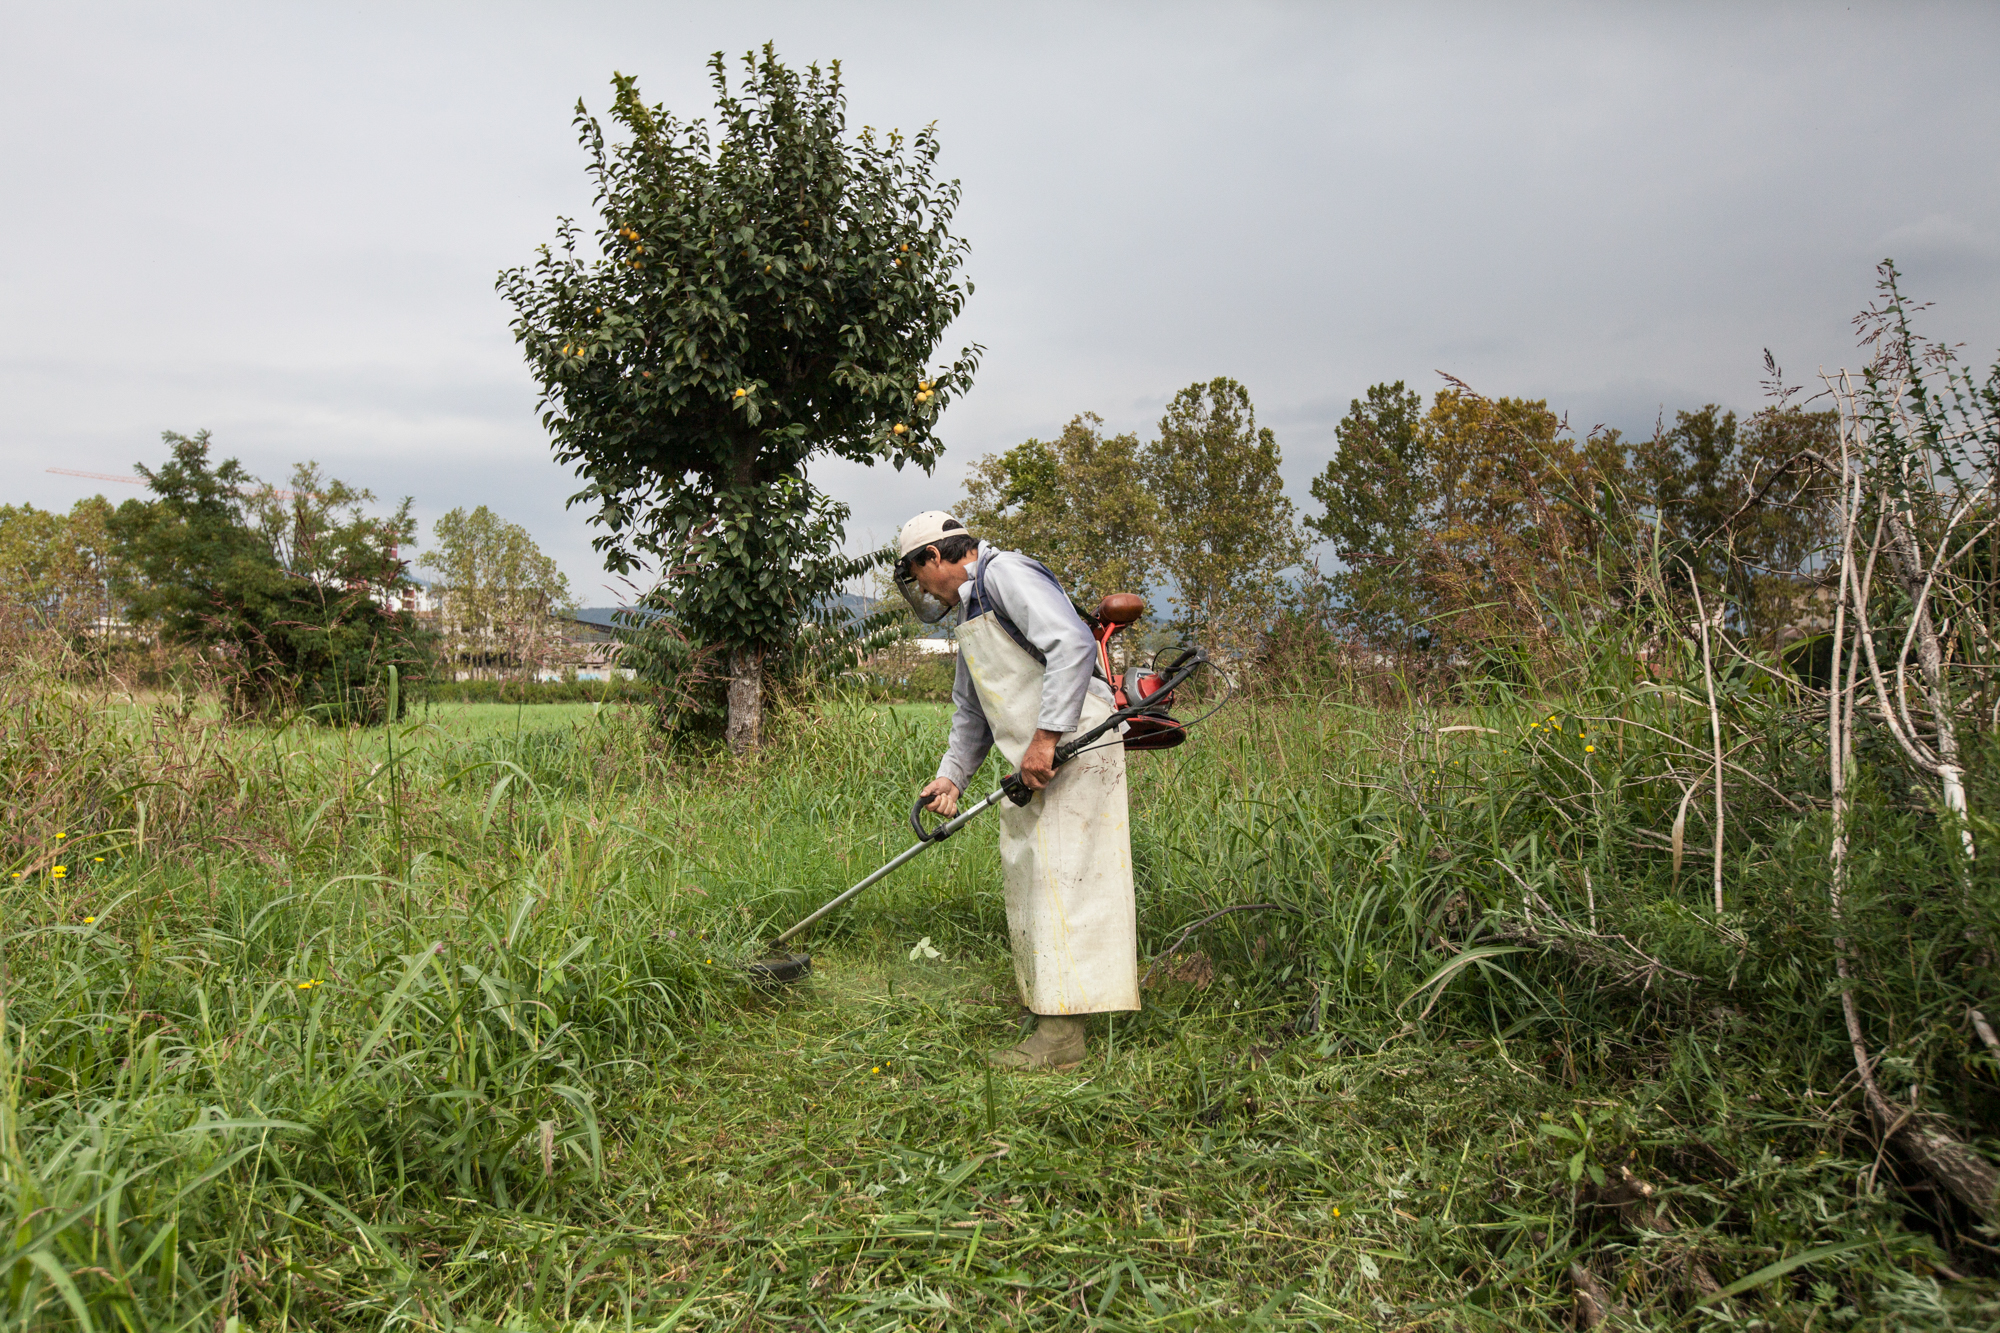  Un agricoltore taglia l'erba del suo terreno, nonostante le ordinanze comunali vietino il contatto diretto con il terreno.Brescia / Italia. Ottobre 2013 